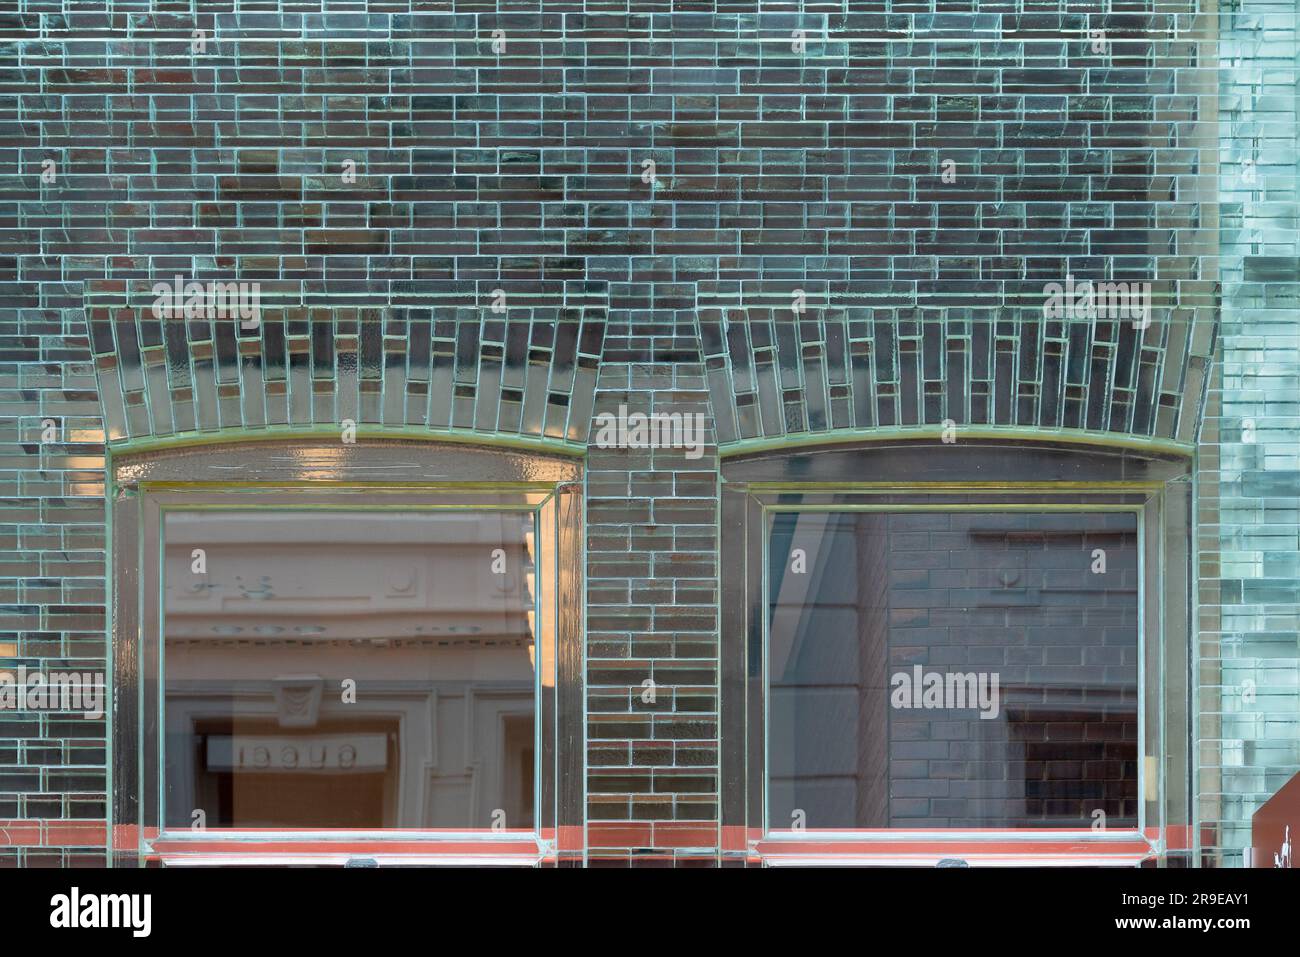 Amsterdam, Países Bajos - Tienda Hermes por MVRDV con ladrillos de vidrio Foto de stock